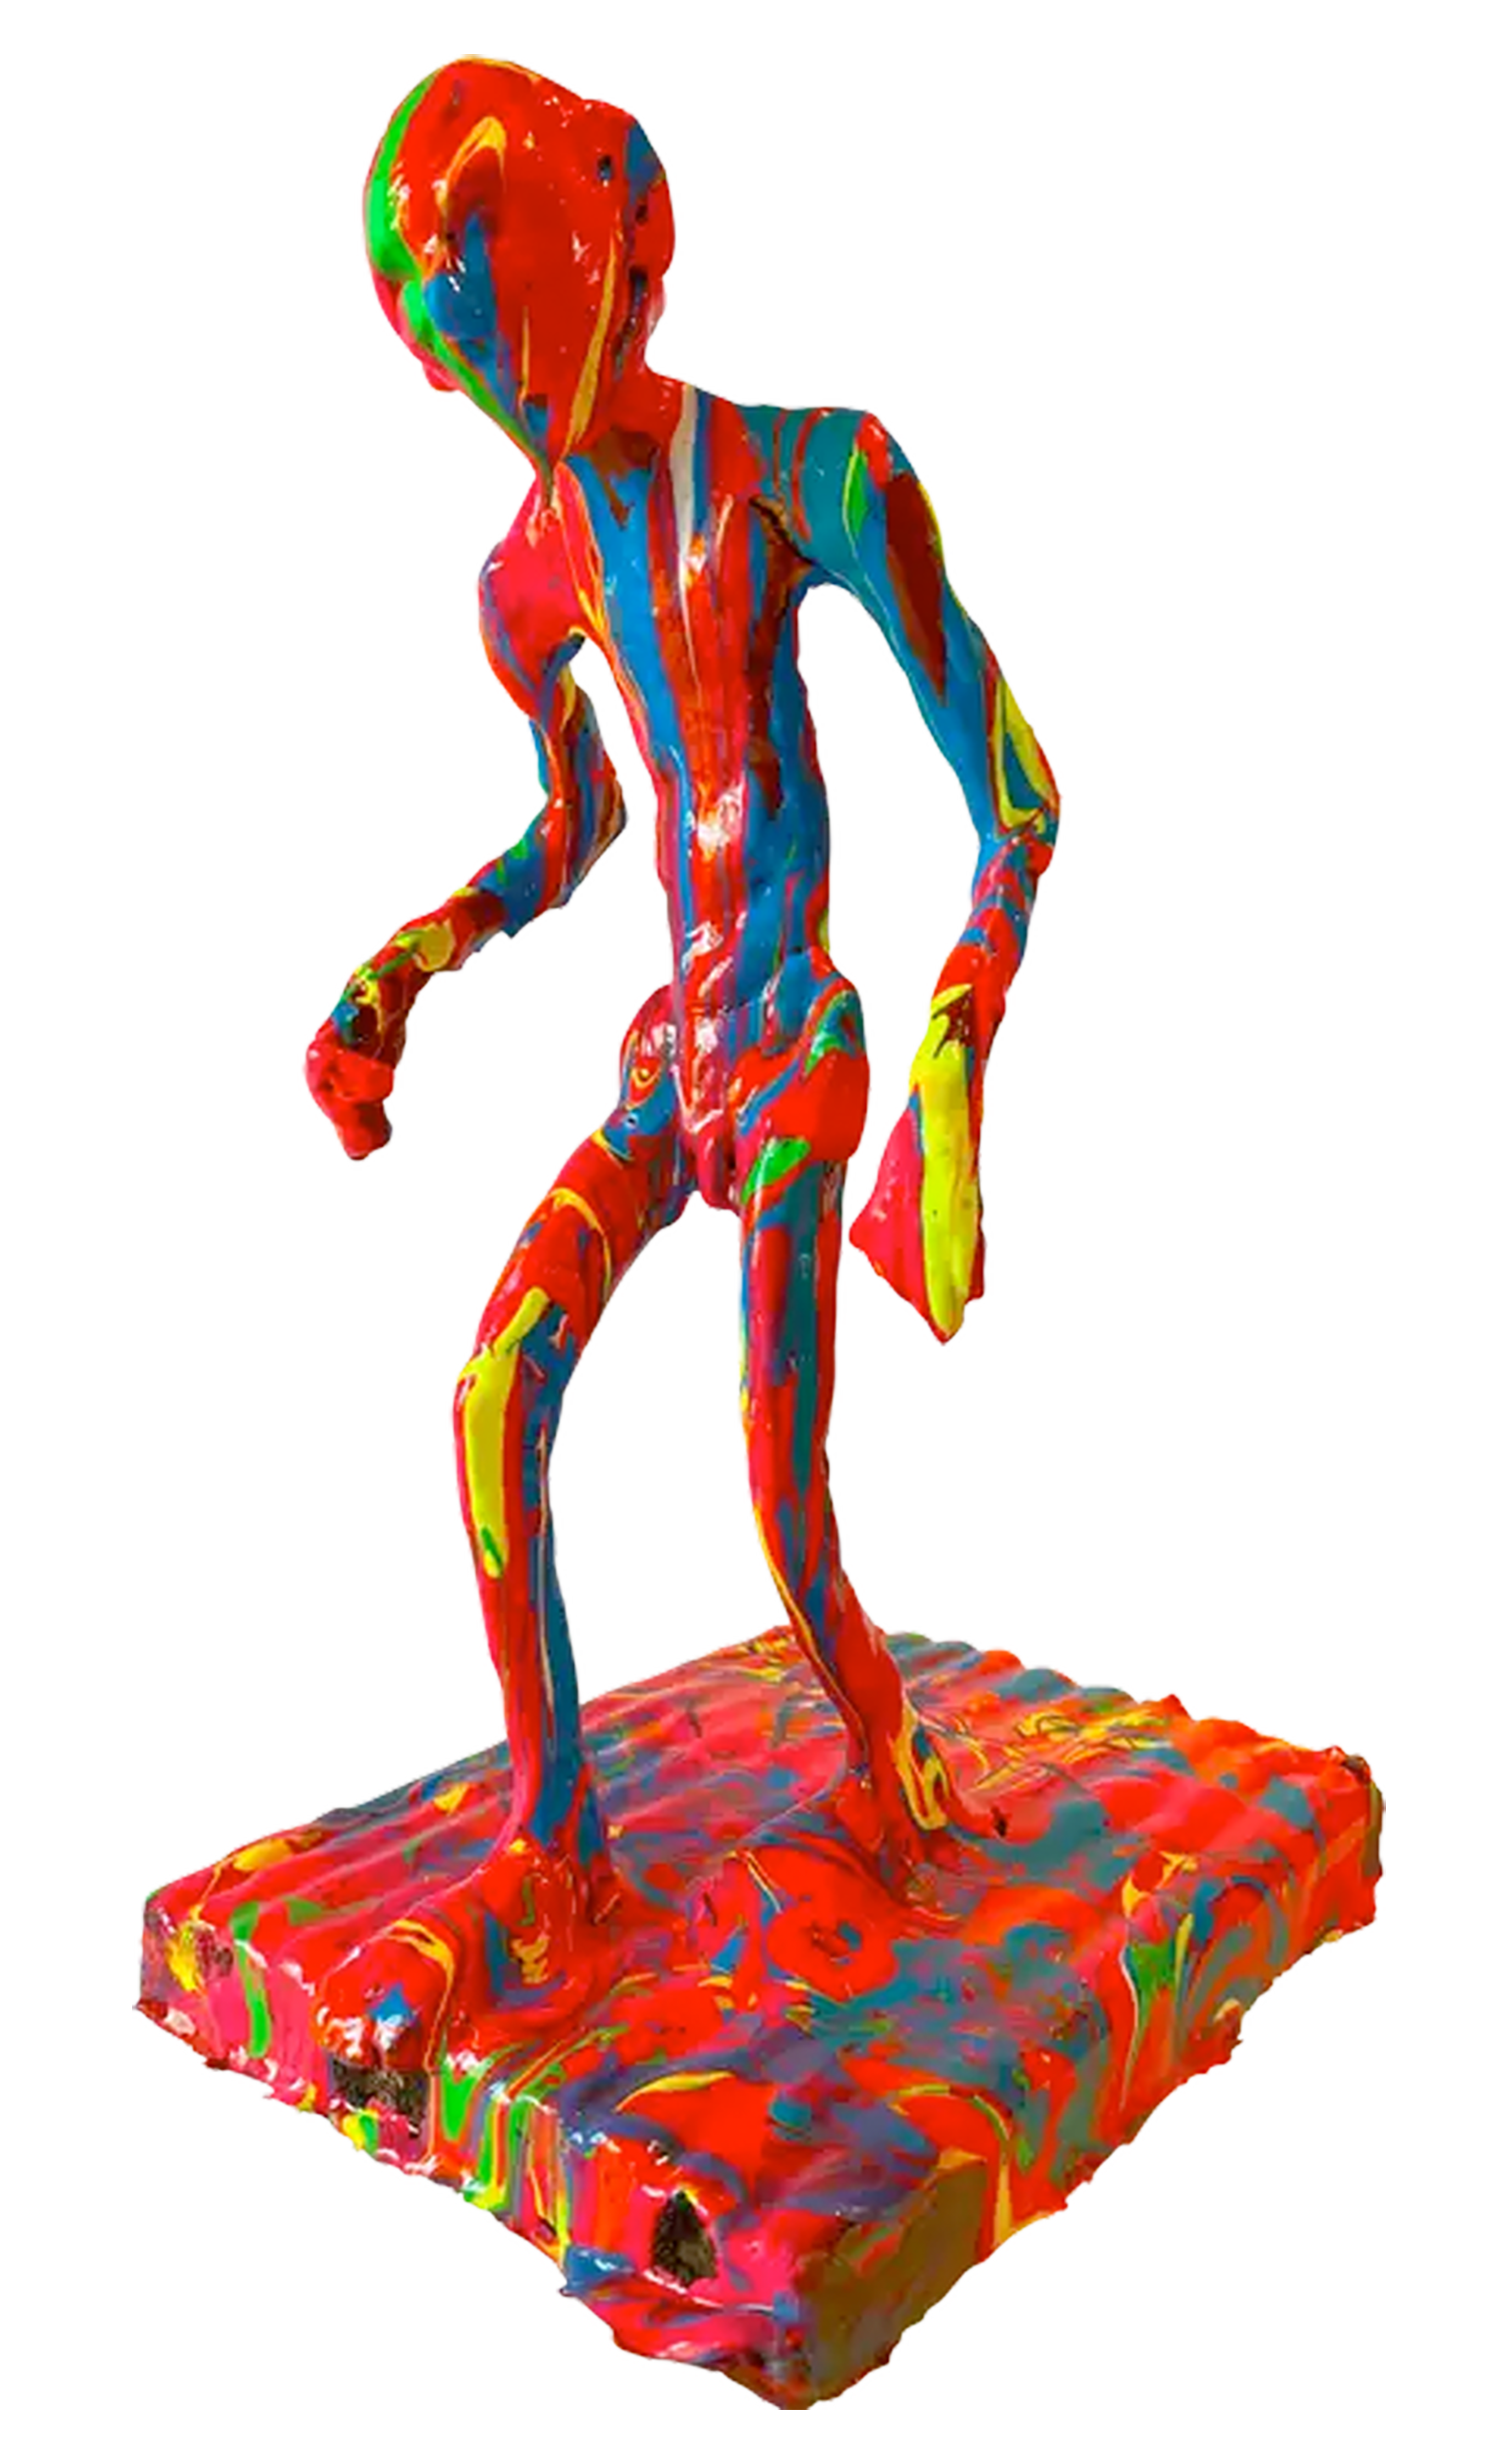 Die Skulptur eines "colorwalkers". Bunt und froh erkundet er seine Welt. Diese Skulptur ist zunächst aus Ton modelliert und danach mit Farbe und Epoxidharz gestaltet worden. Sie steht auf einem Stück Holz.